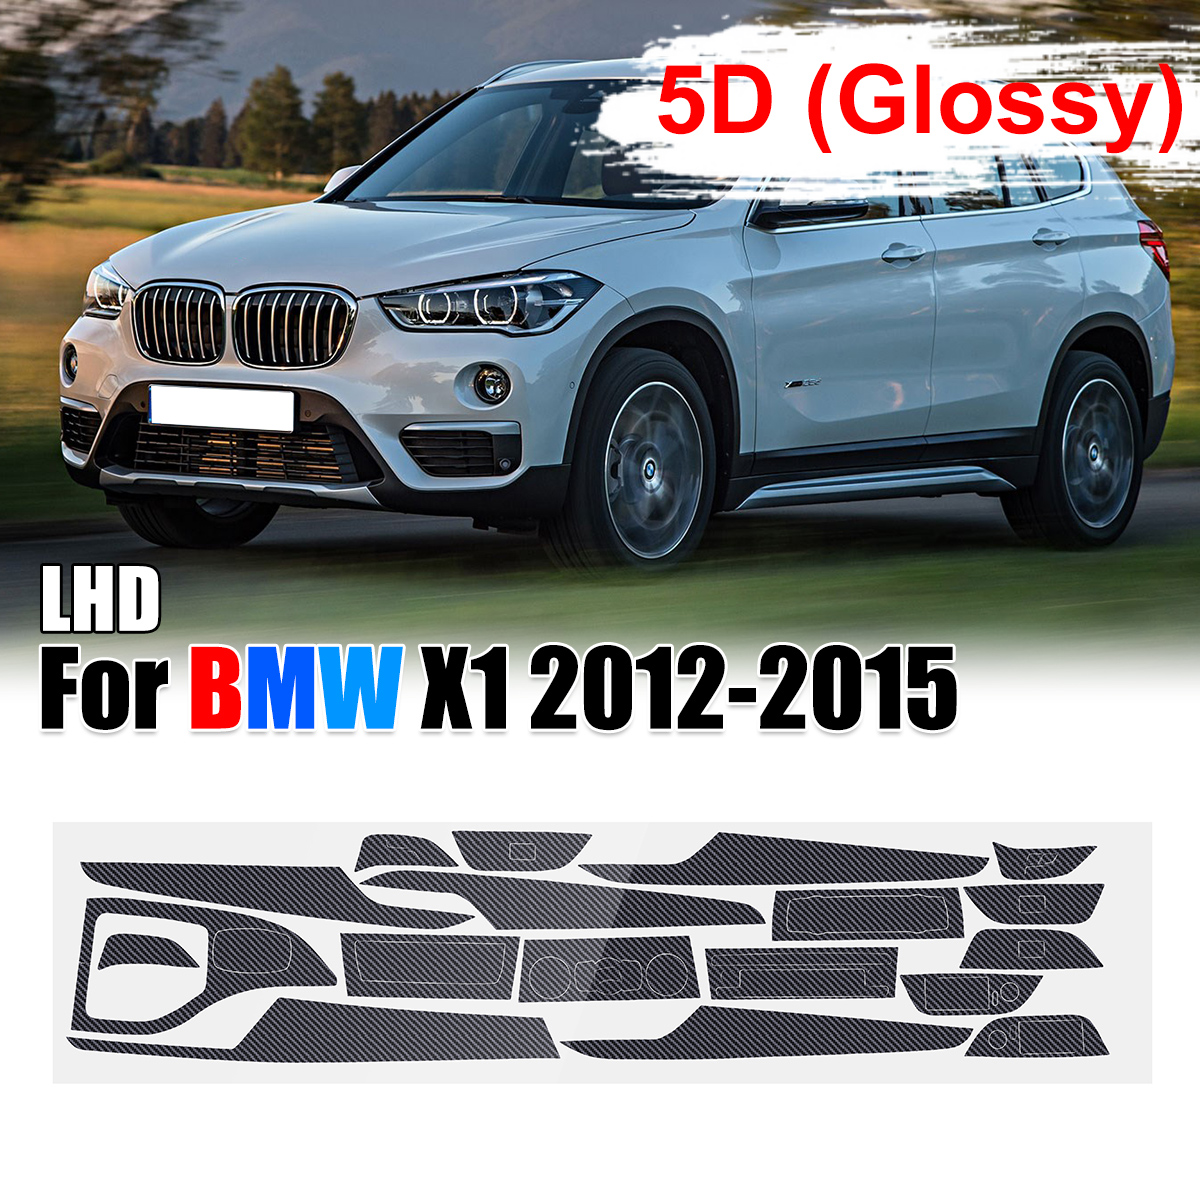 15Pcs LHD Carbon Fiber Sticker Interior Vinyl Decal for BMW X1 2012-2015 3D / 5D